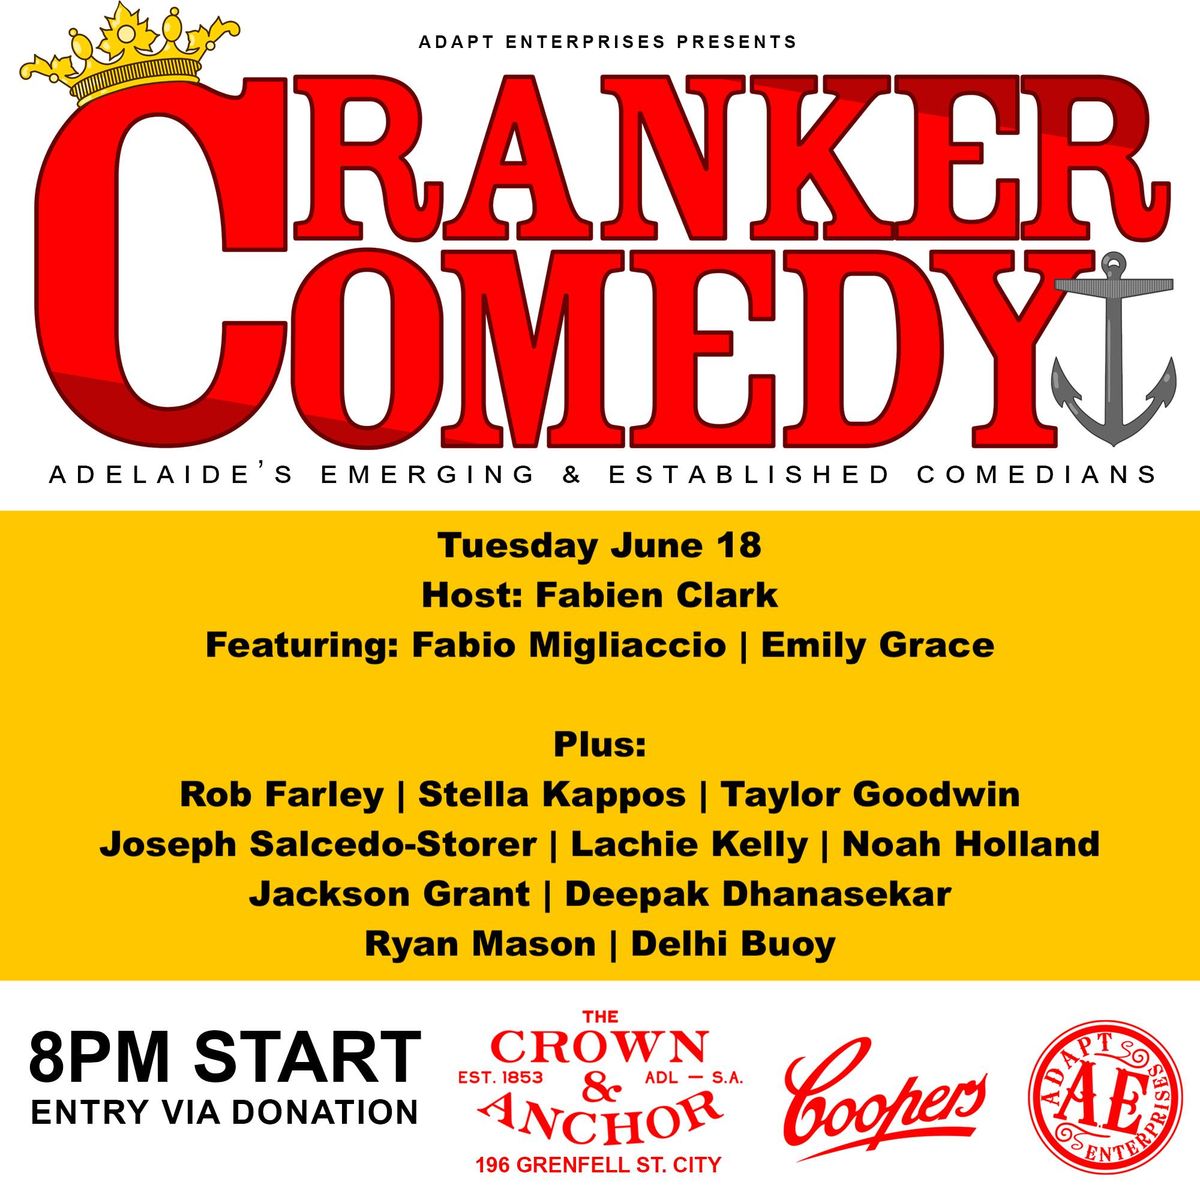 Cranker Comedy Tues June 18